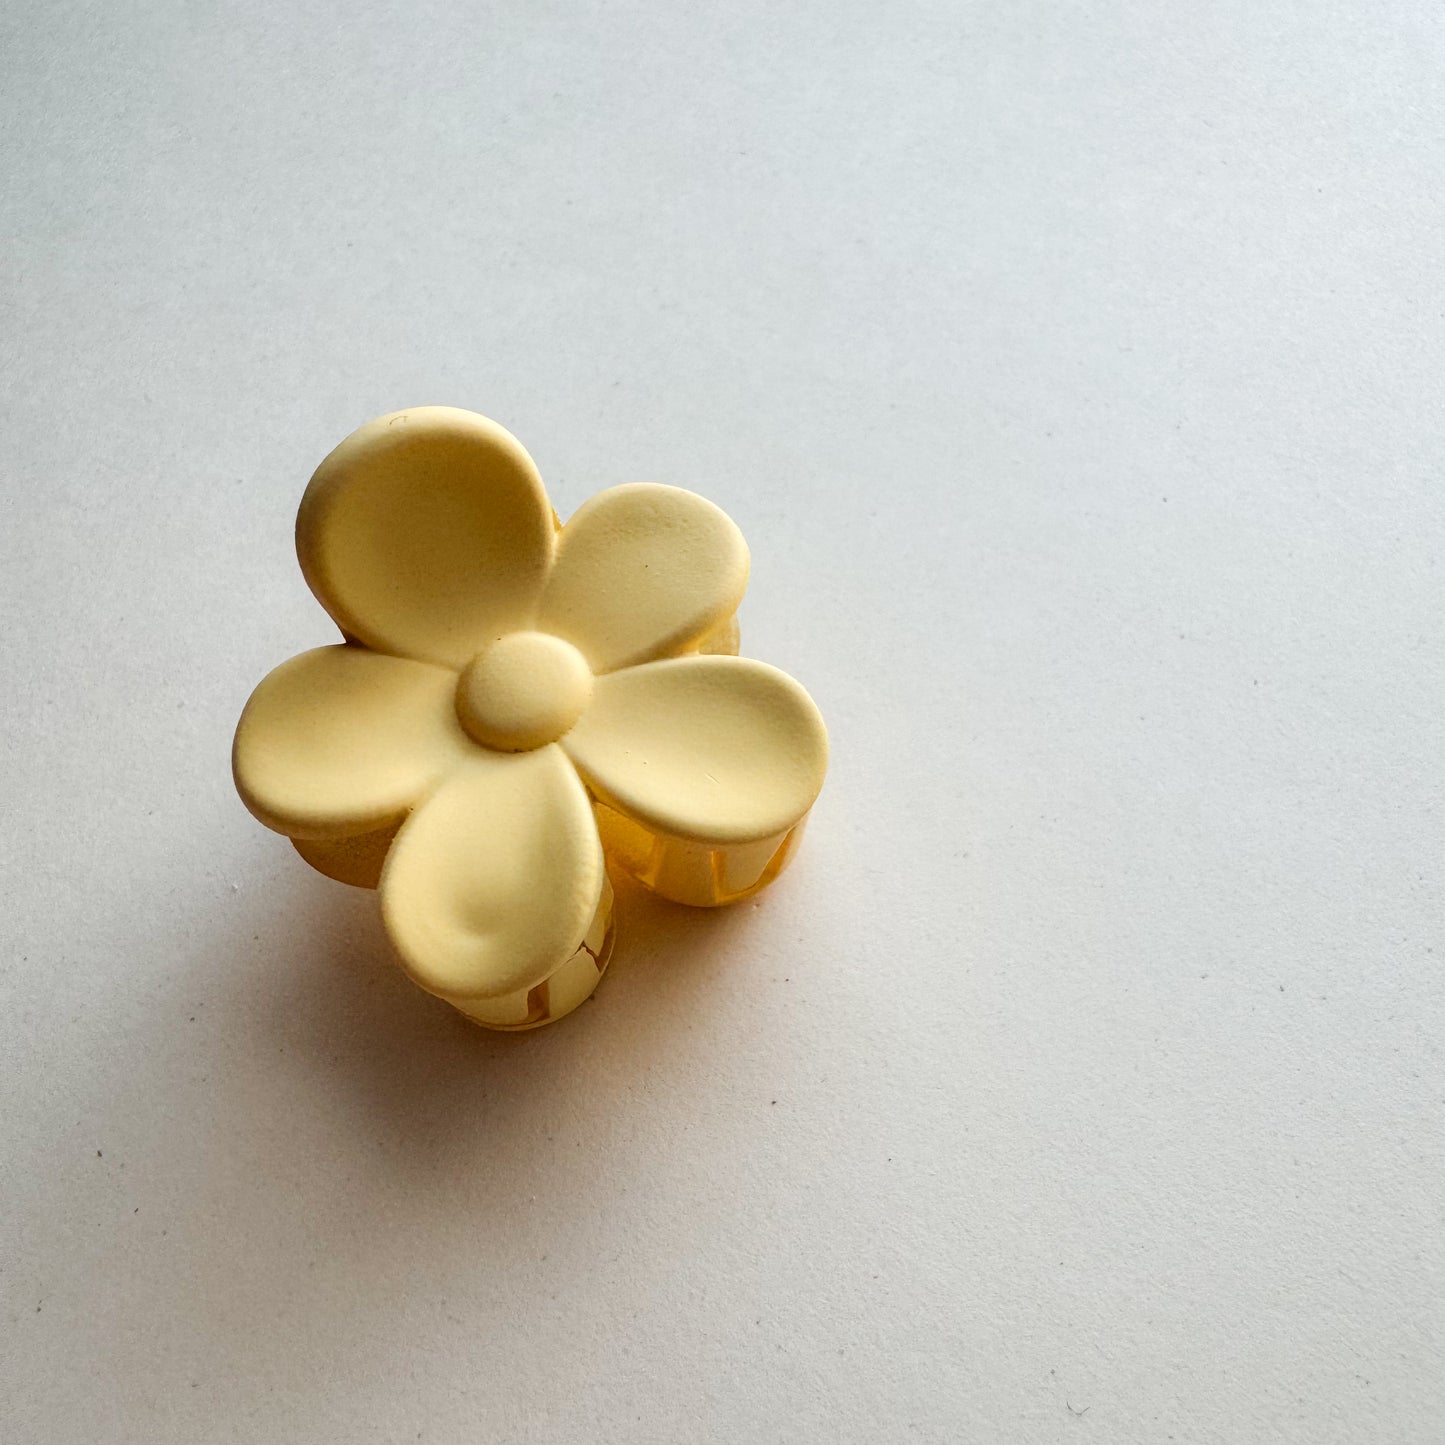 Sweet daisy hiusklipsu (3 cm)